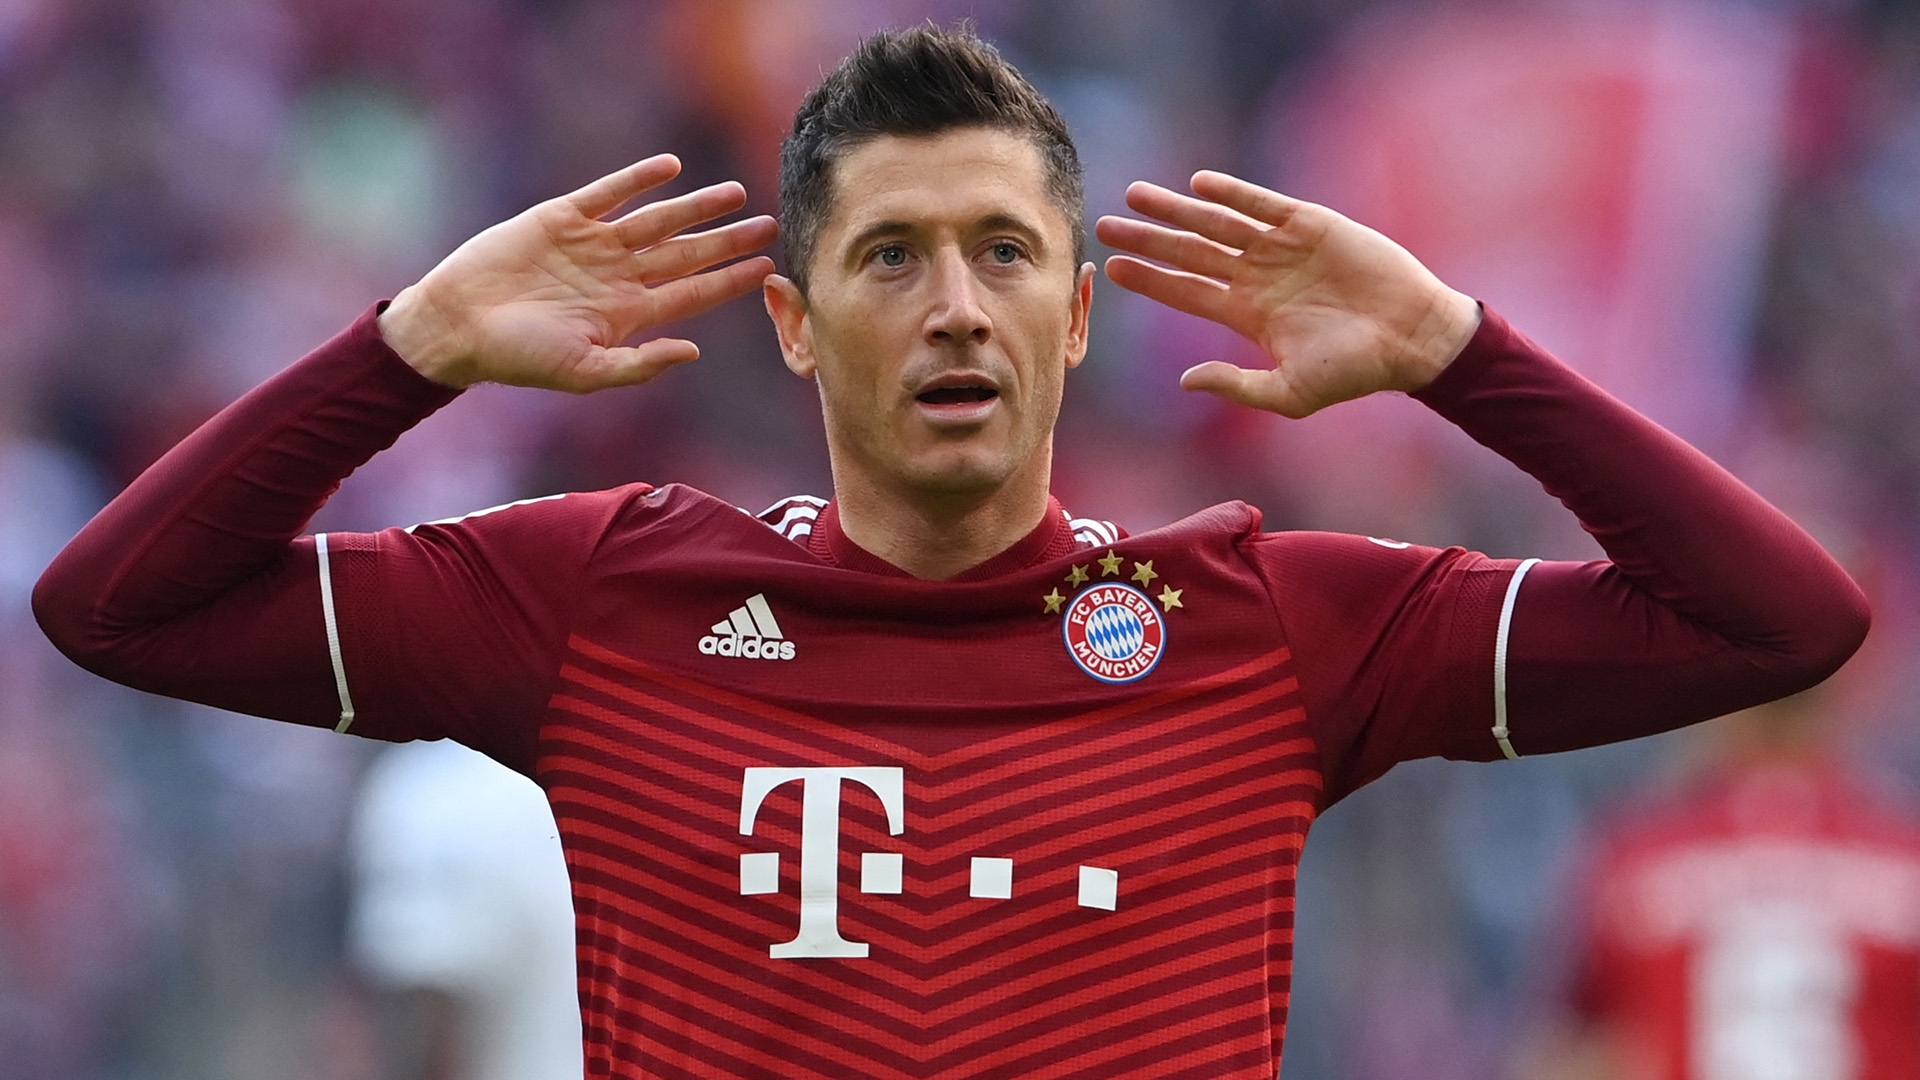 Extraer eficiencia Sofisticado El futuro de Lewandowski en el Bayern sigue en el aire a medida que se  avecinan conversaciones de renovación en medio de rumores con el Barça |  Goal.com Colombia